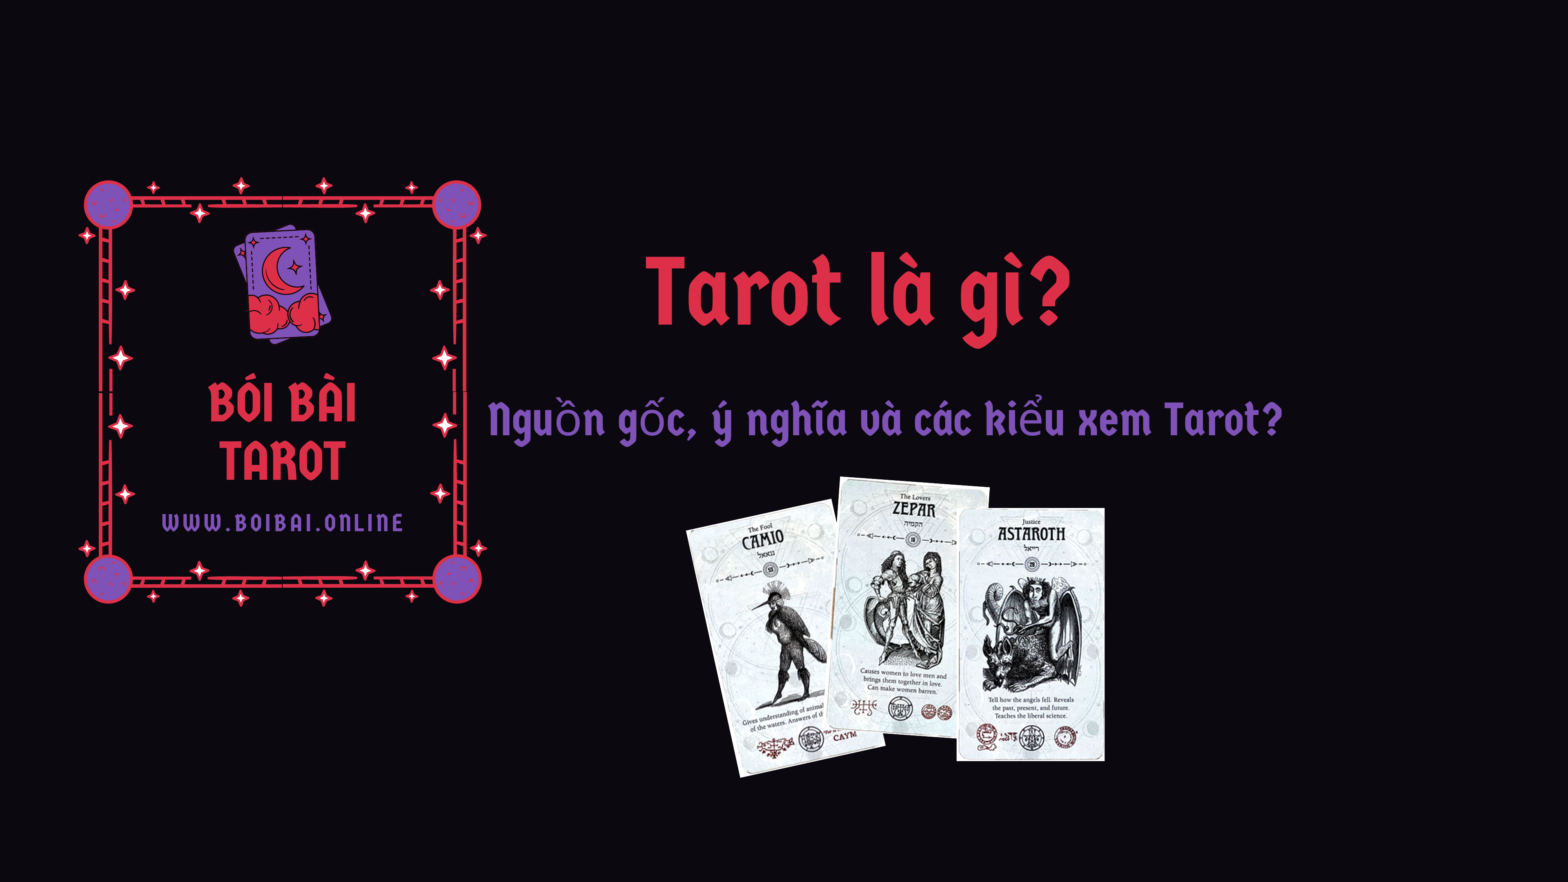 Tarot là gì